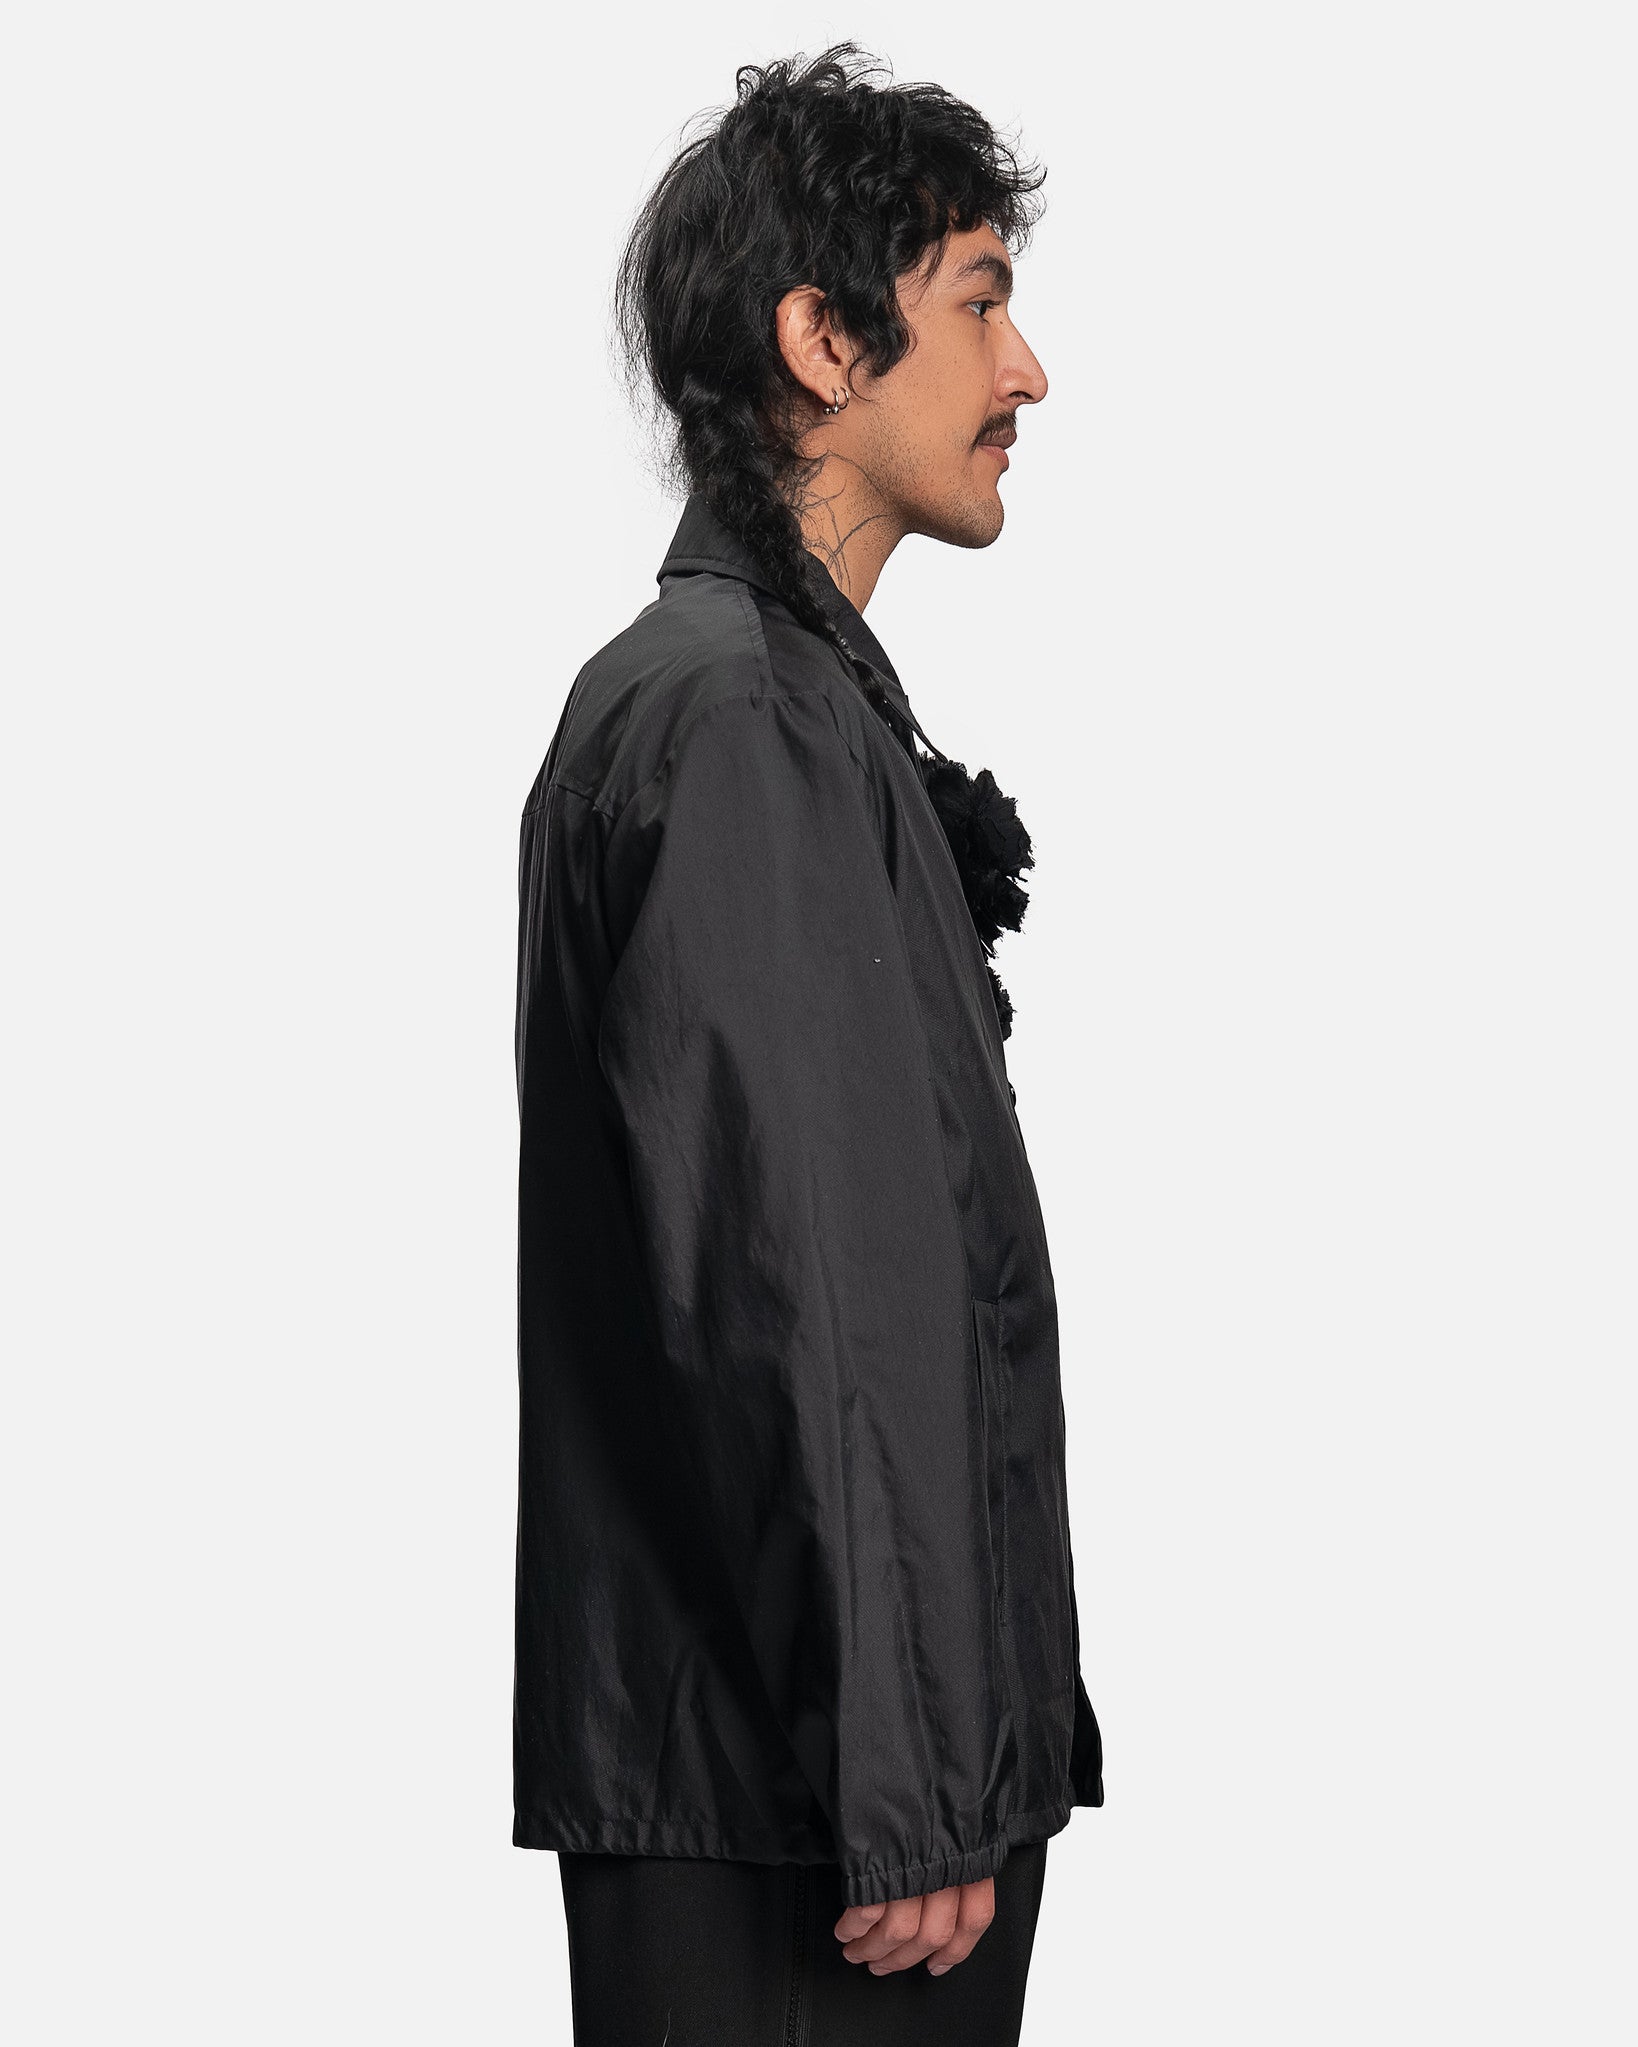 Vorrie Jacket in Black – SVRN